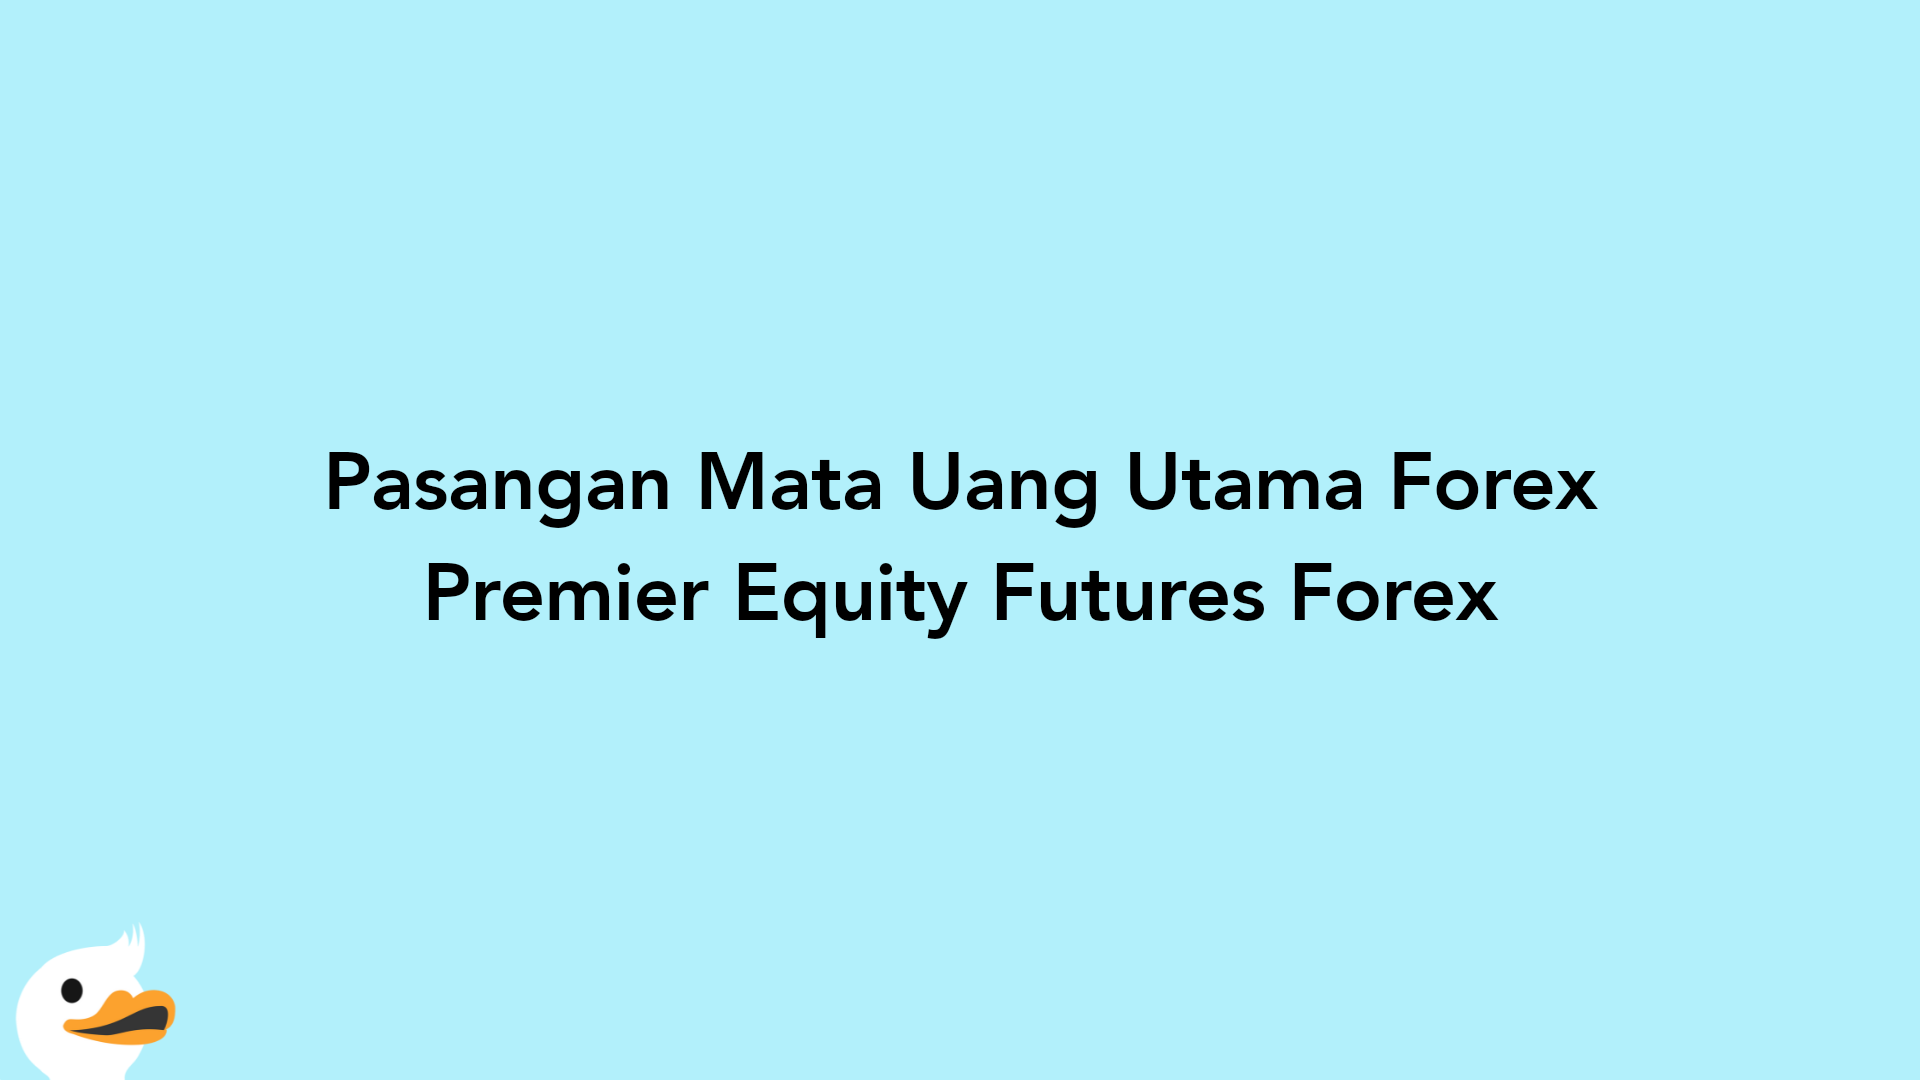 Pasangan Mata Uang Utama Forex Premier Equity Futures Forex